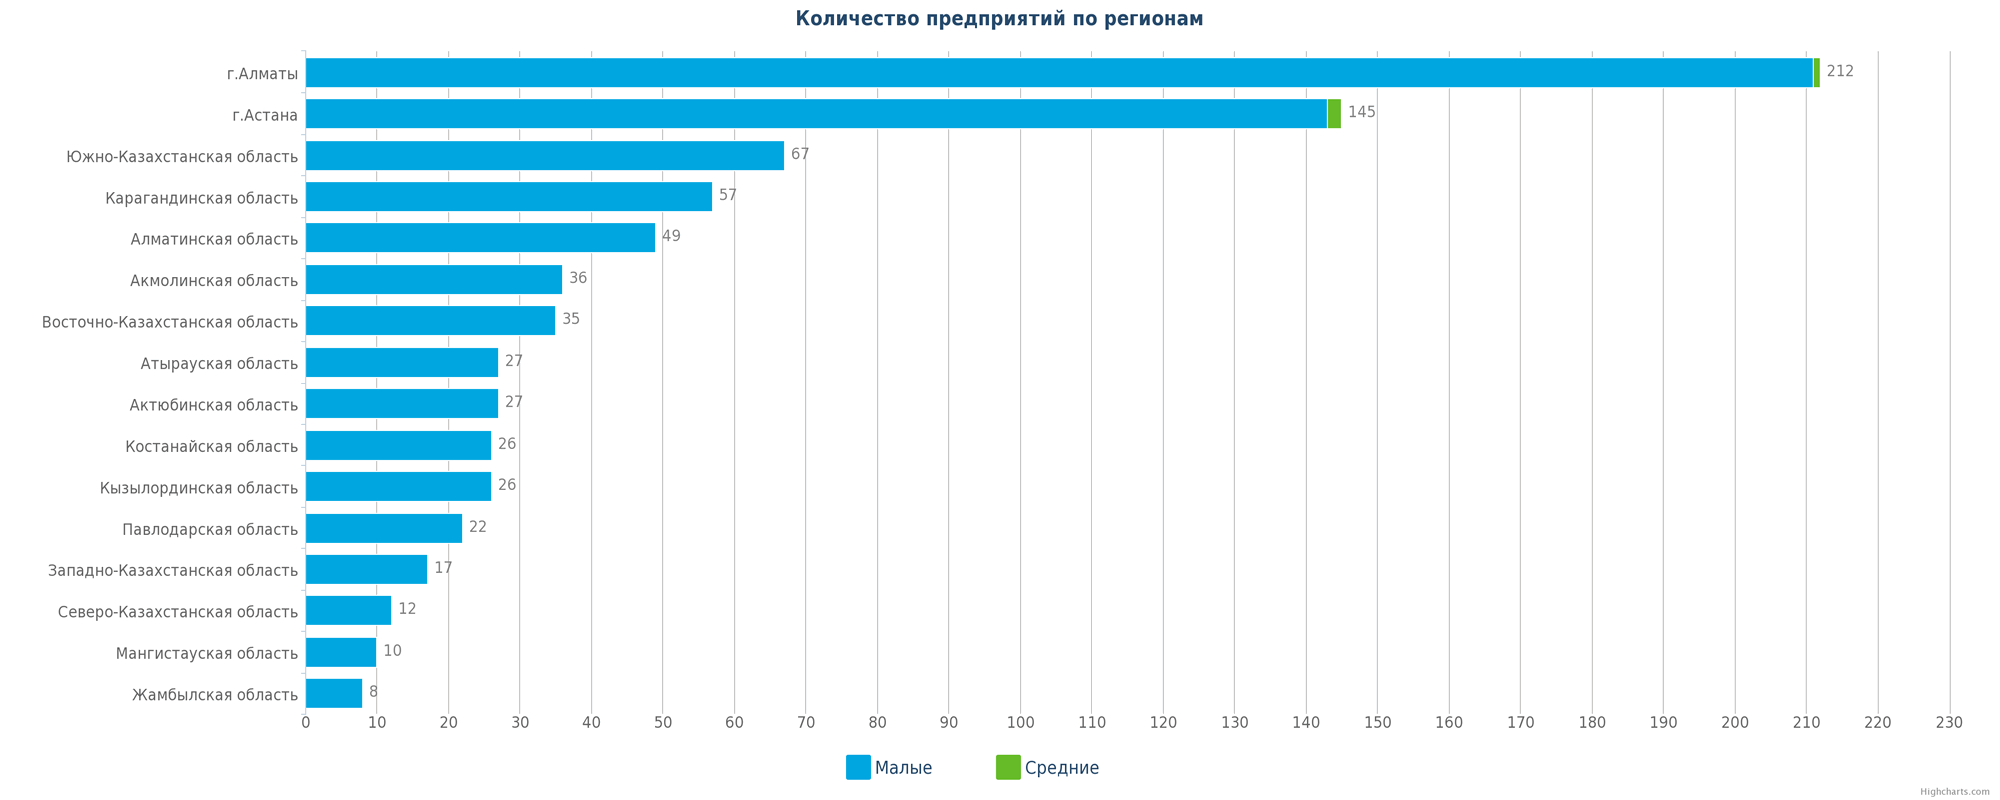 Количество новых организаций и предприятий по регионам РК в числе новых